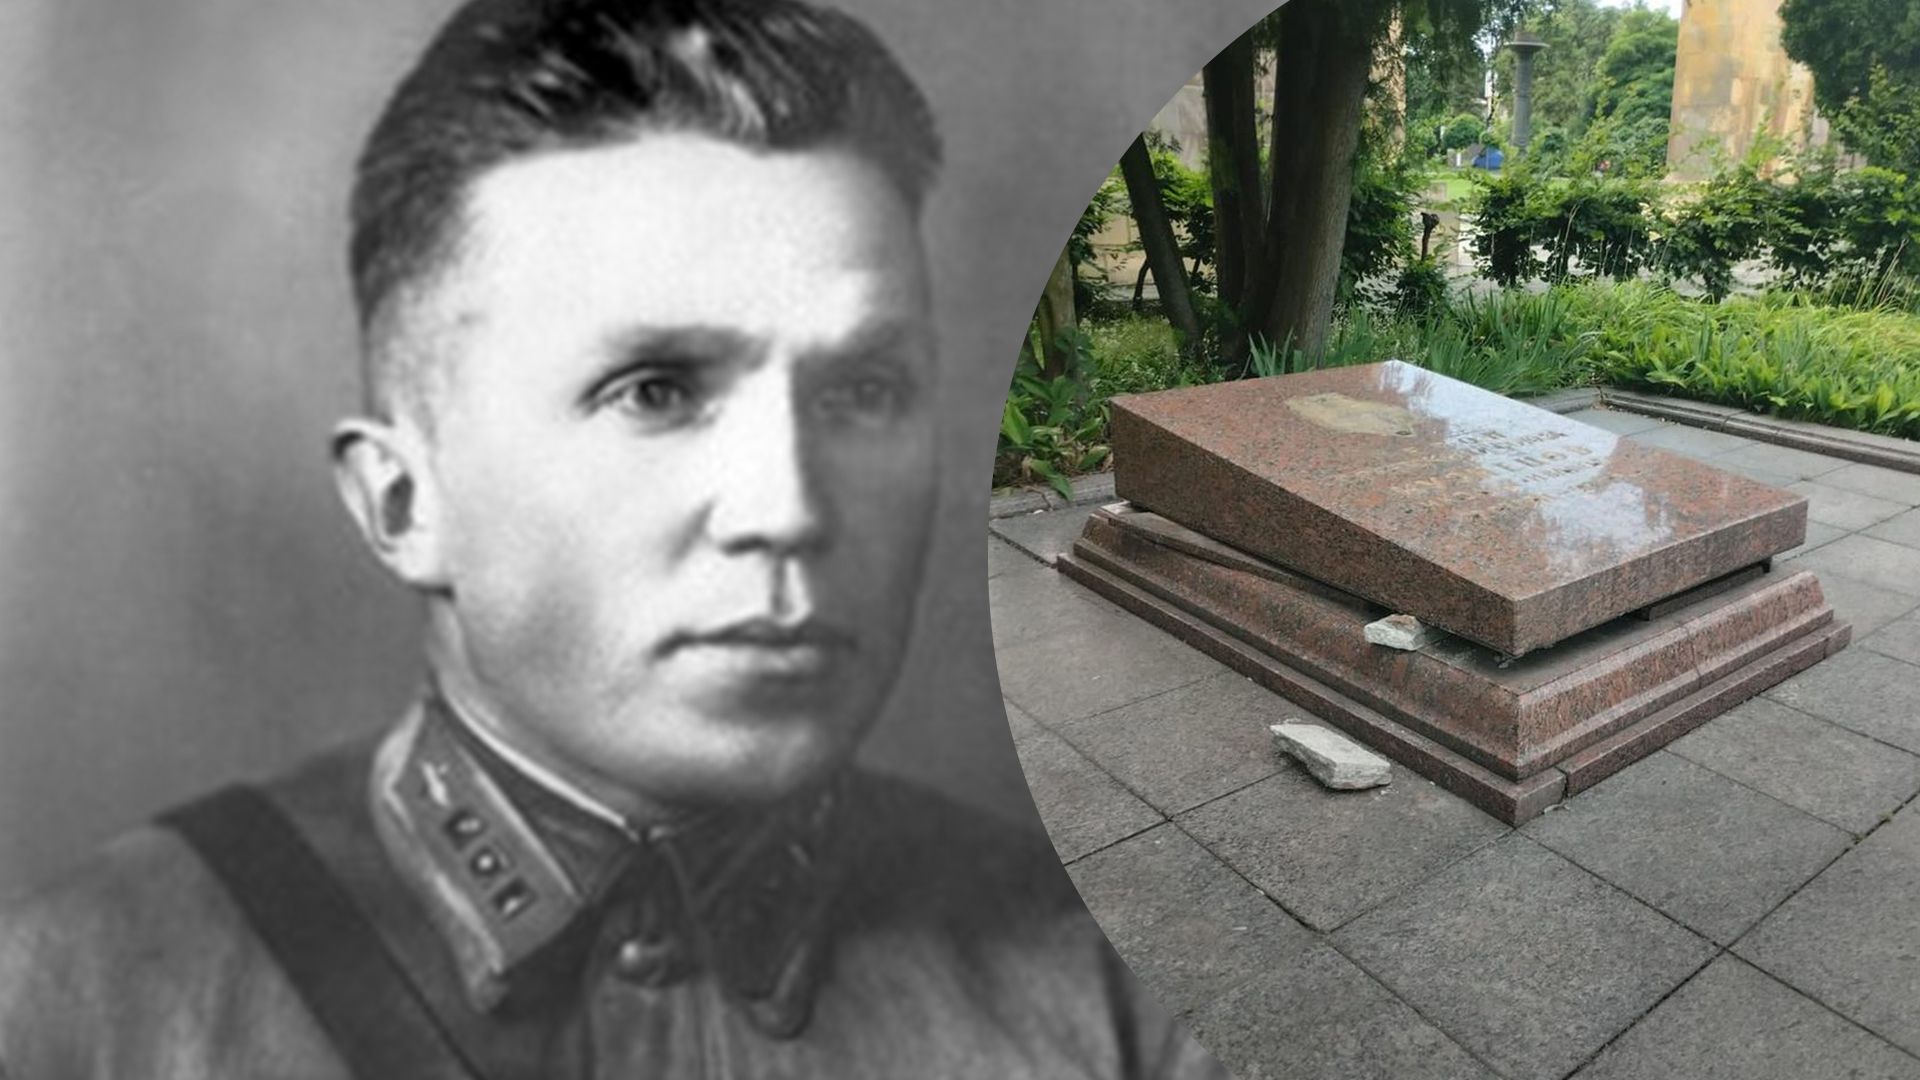 Прах советского разведчика Кузнецова пытались забрать из могилы